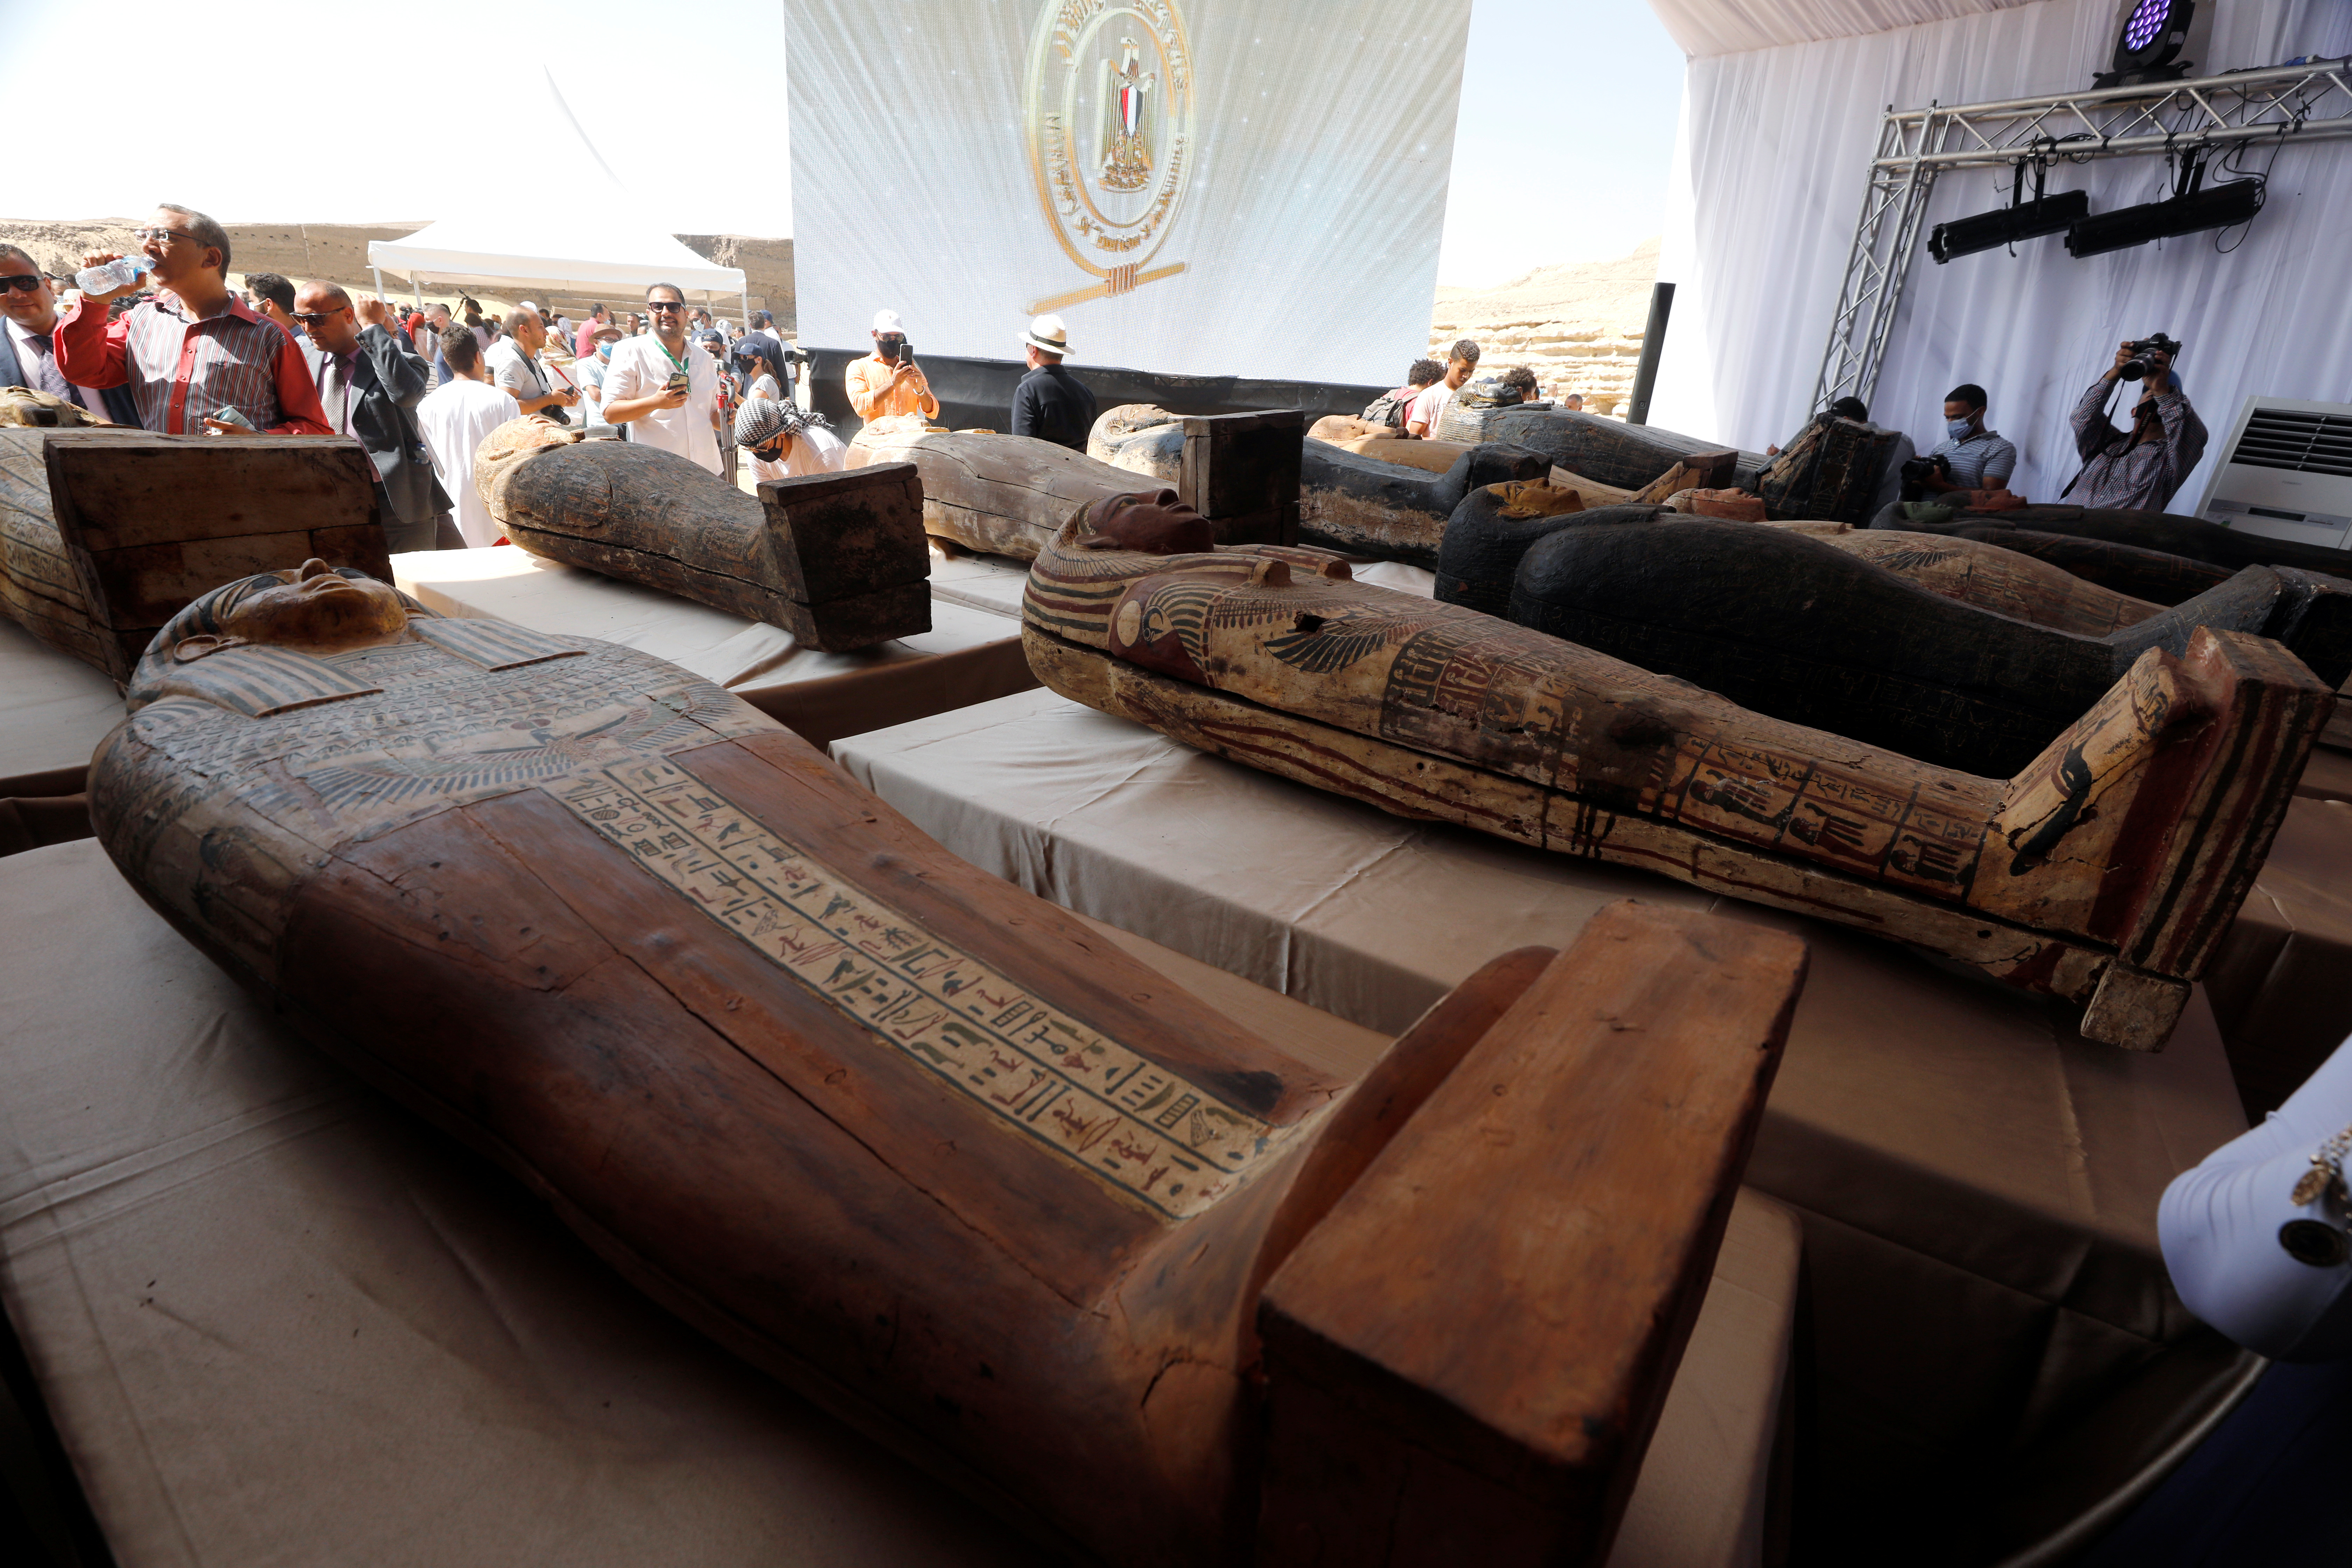 Expertos afirman que todas las momias pertenecen a altos sacerdotes y oficiales del Antiguo Egipto que vivieron en la antigua capital de Memfis 